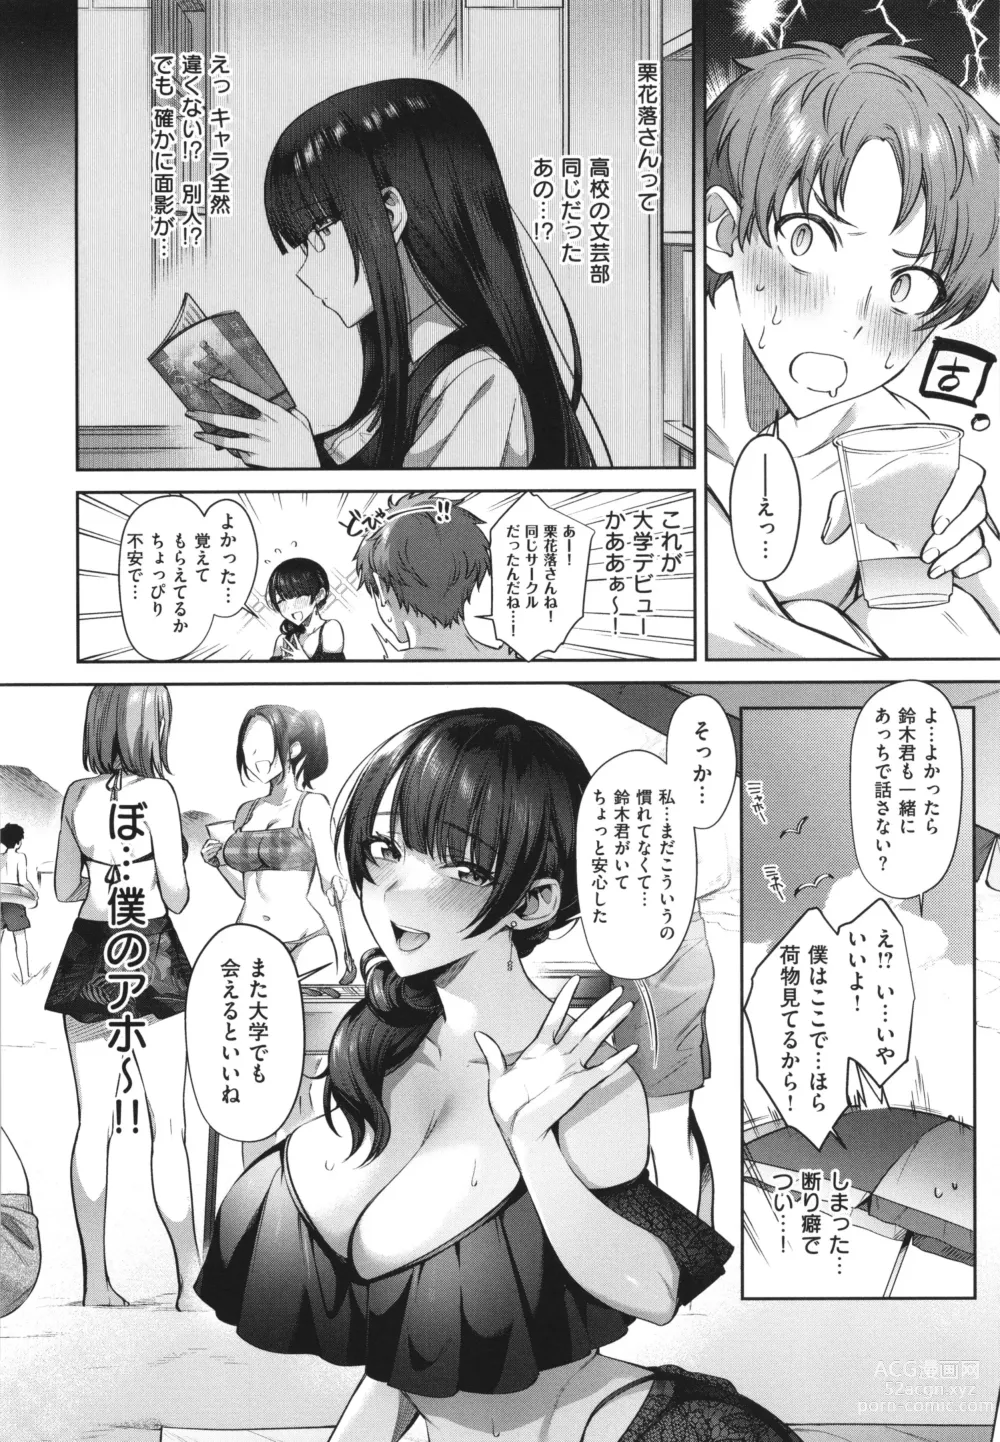 Page 8 of manga Tsubomi Zakari